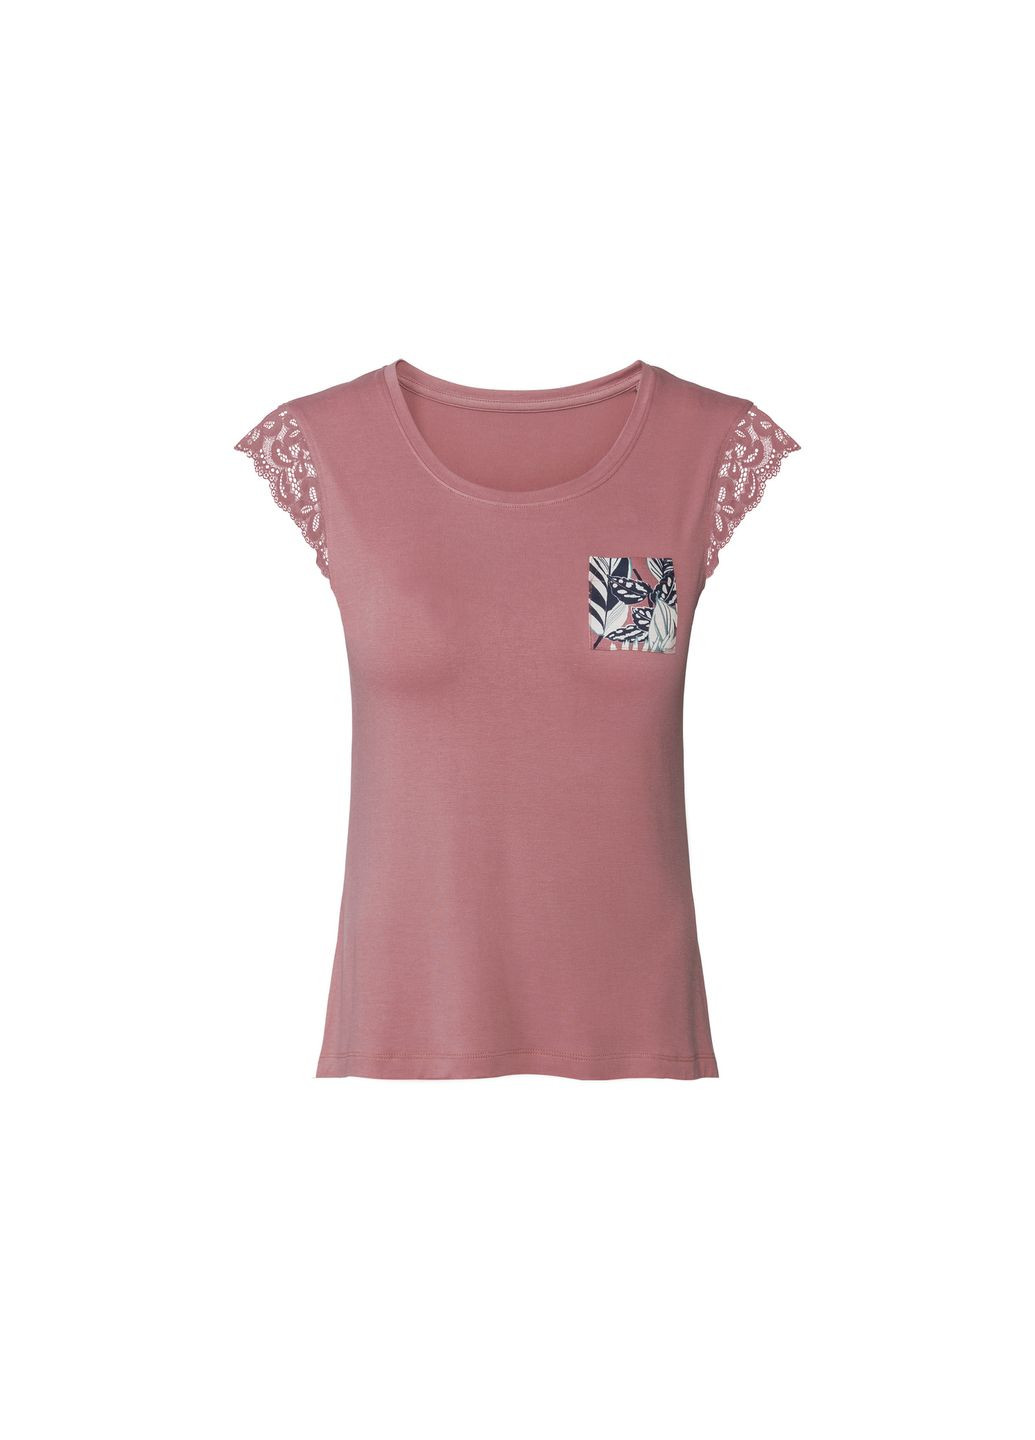 Розовая пижама (футболка и шорты) для женщины 409171 Esmara